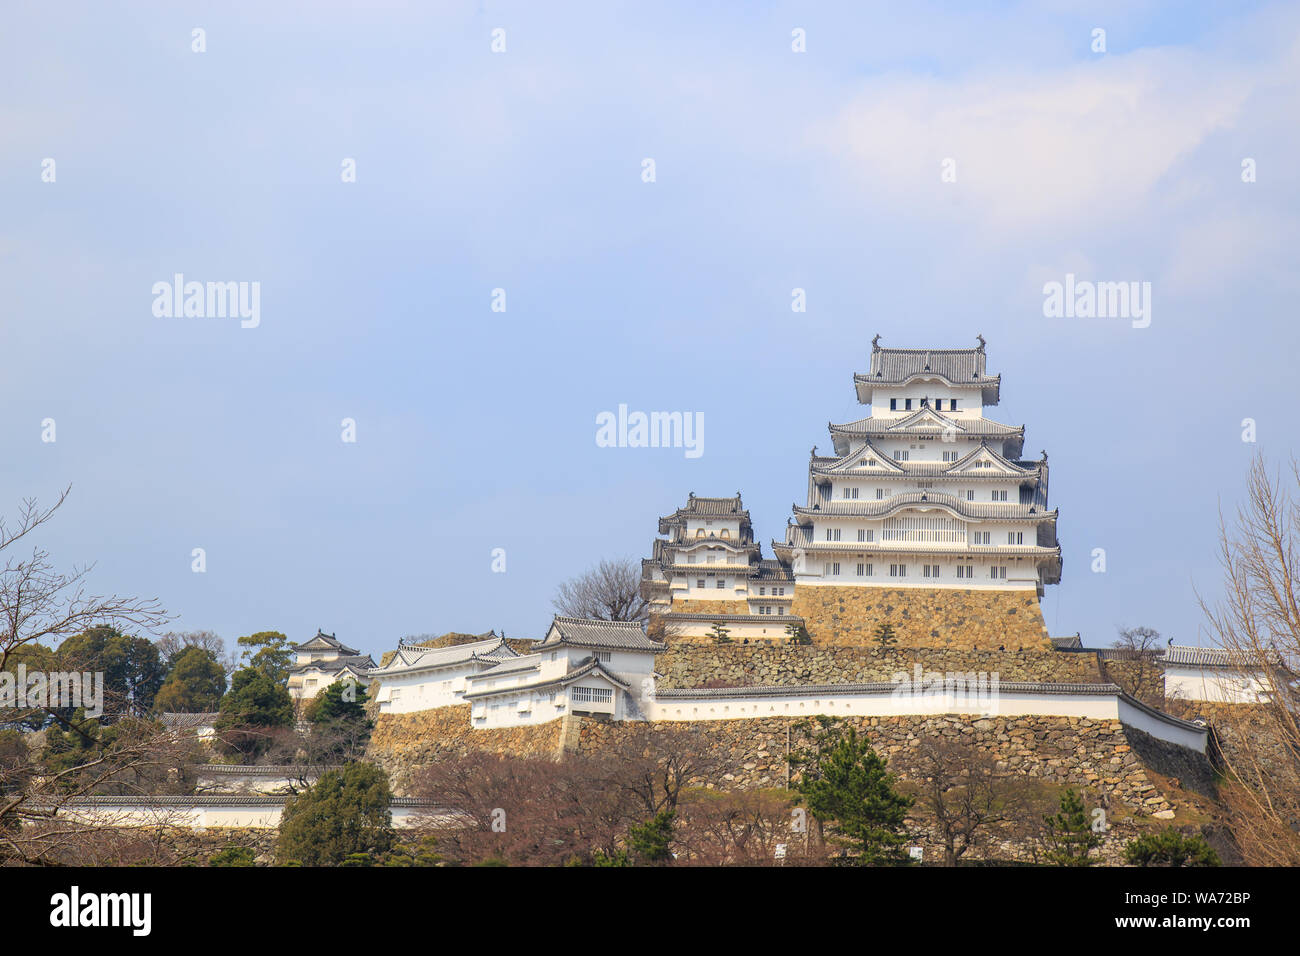 Château de Himeji est célèbre et historique inscrit au Patrimoine Mondial de l'UNESCO. Situé dans la ville de Himeji, préfecture de Hyogo, Japon. Banque D'Images